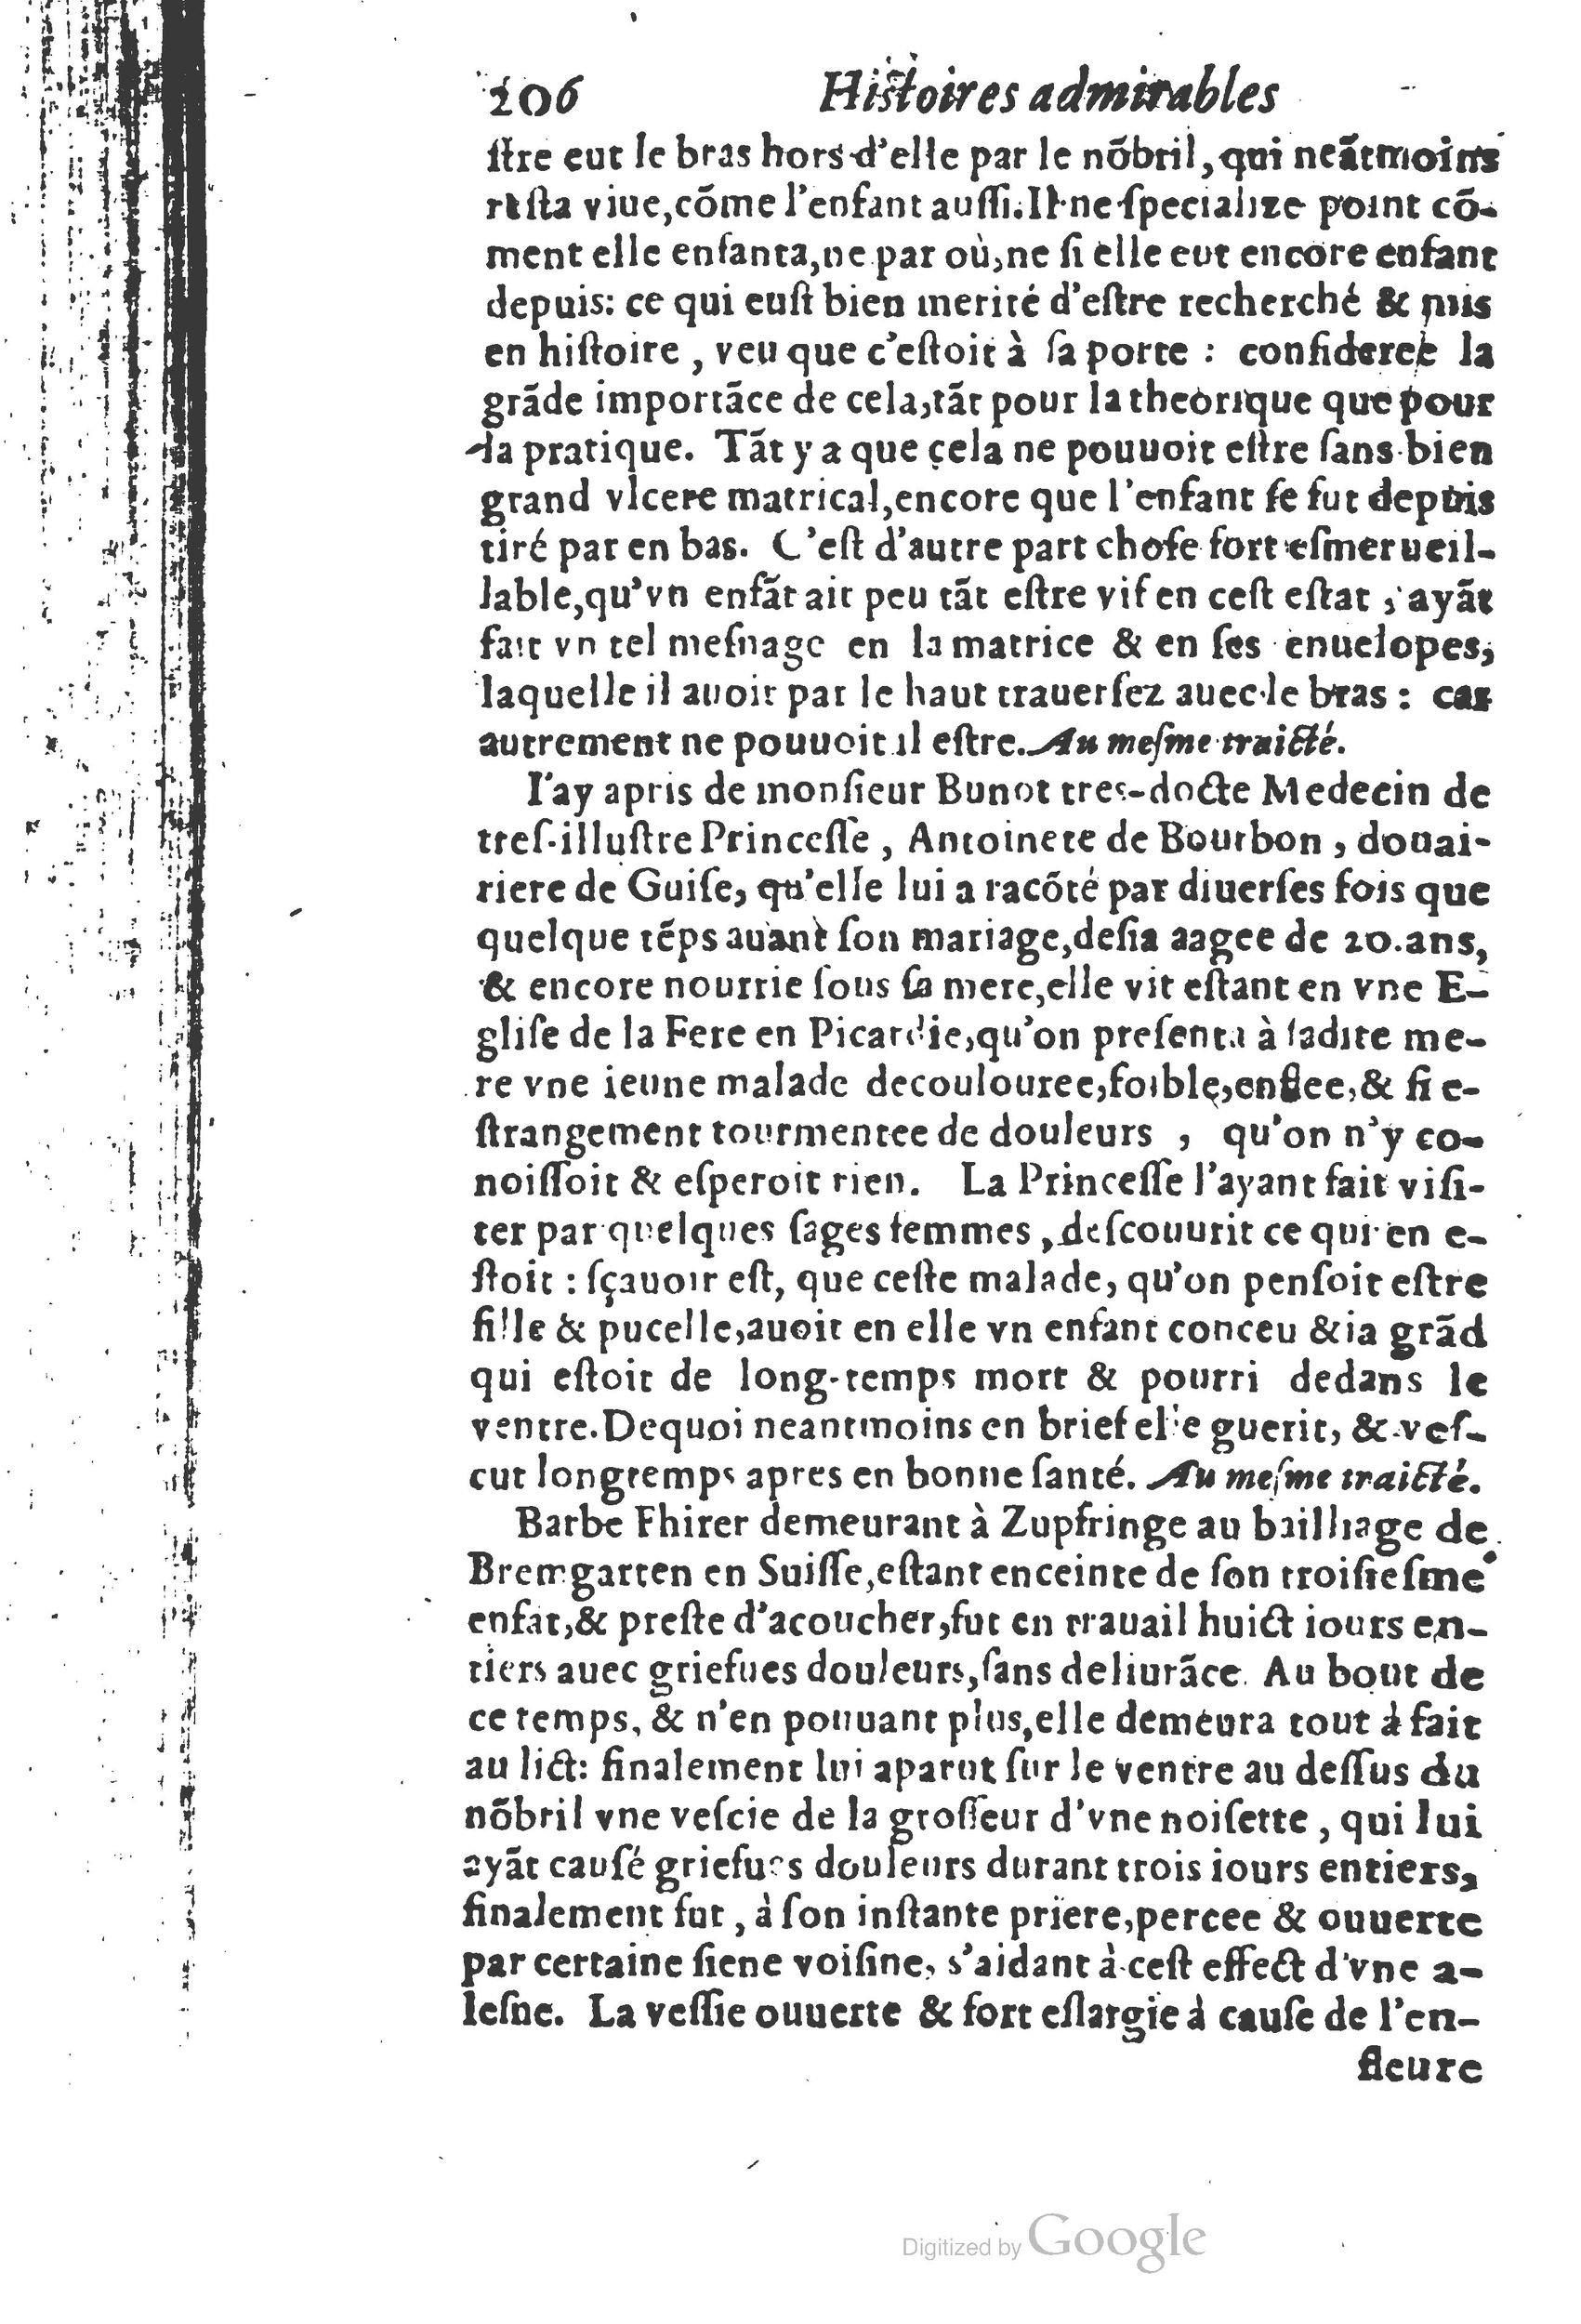 1610 Trésor d’histoires admirables et mémorables de nostre temps Marceau Princeton_Page_0227.jpg